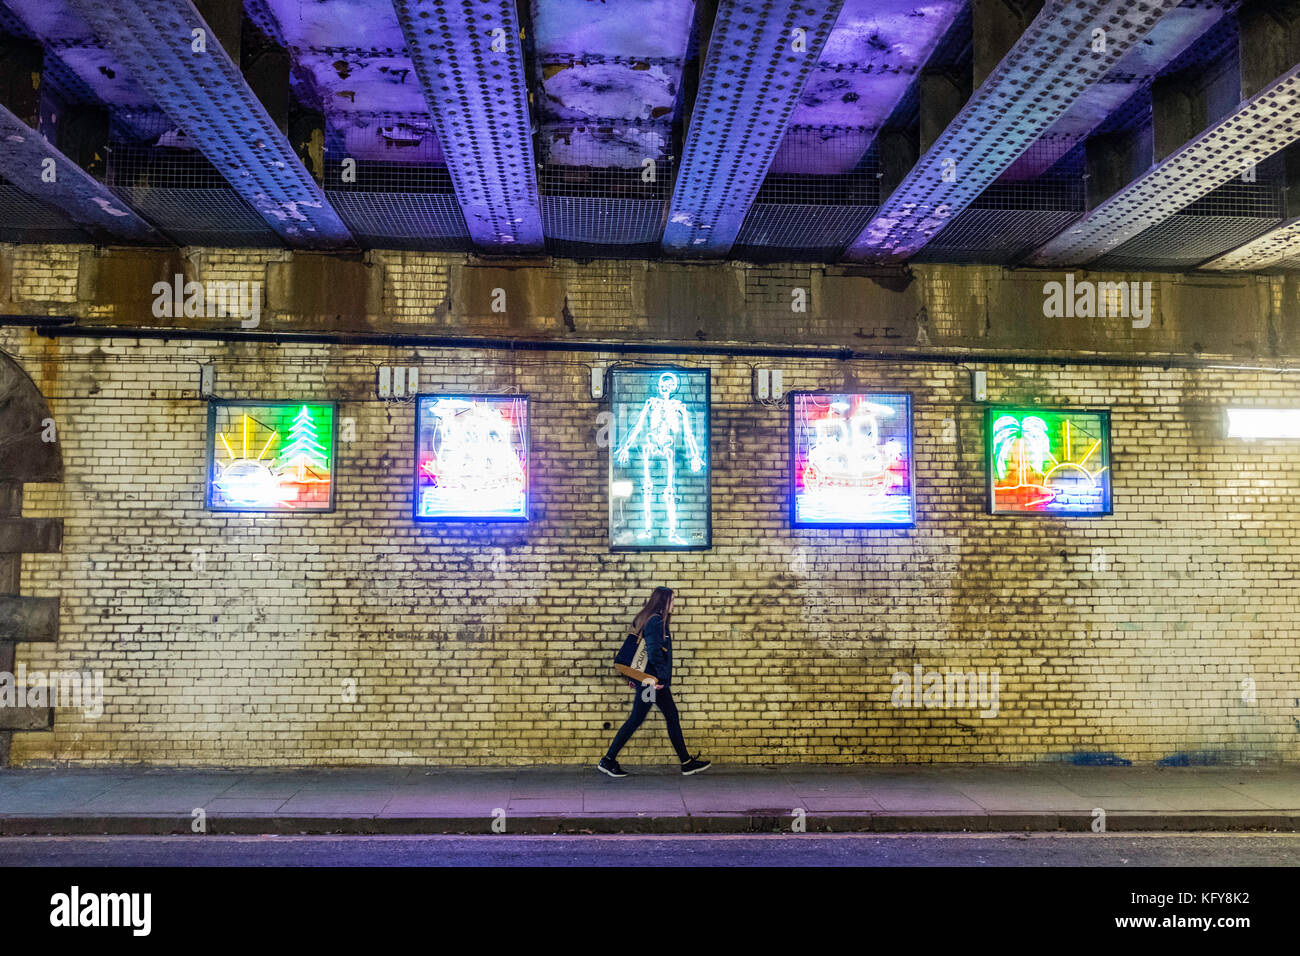 Arte di strada fatta da luci al neon colorate luci sul sottopassaggio nel centro di Edimburgo, Scozia, Regno Unito Foto Stock